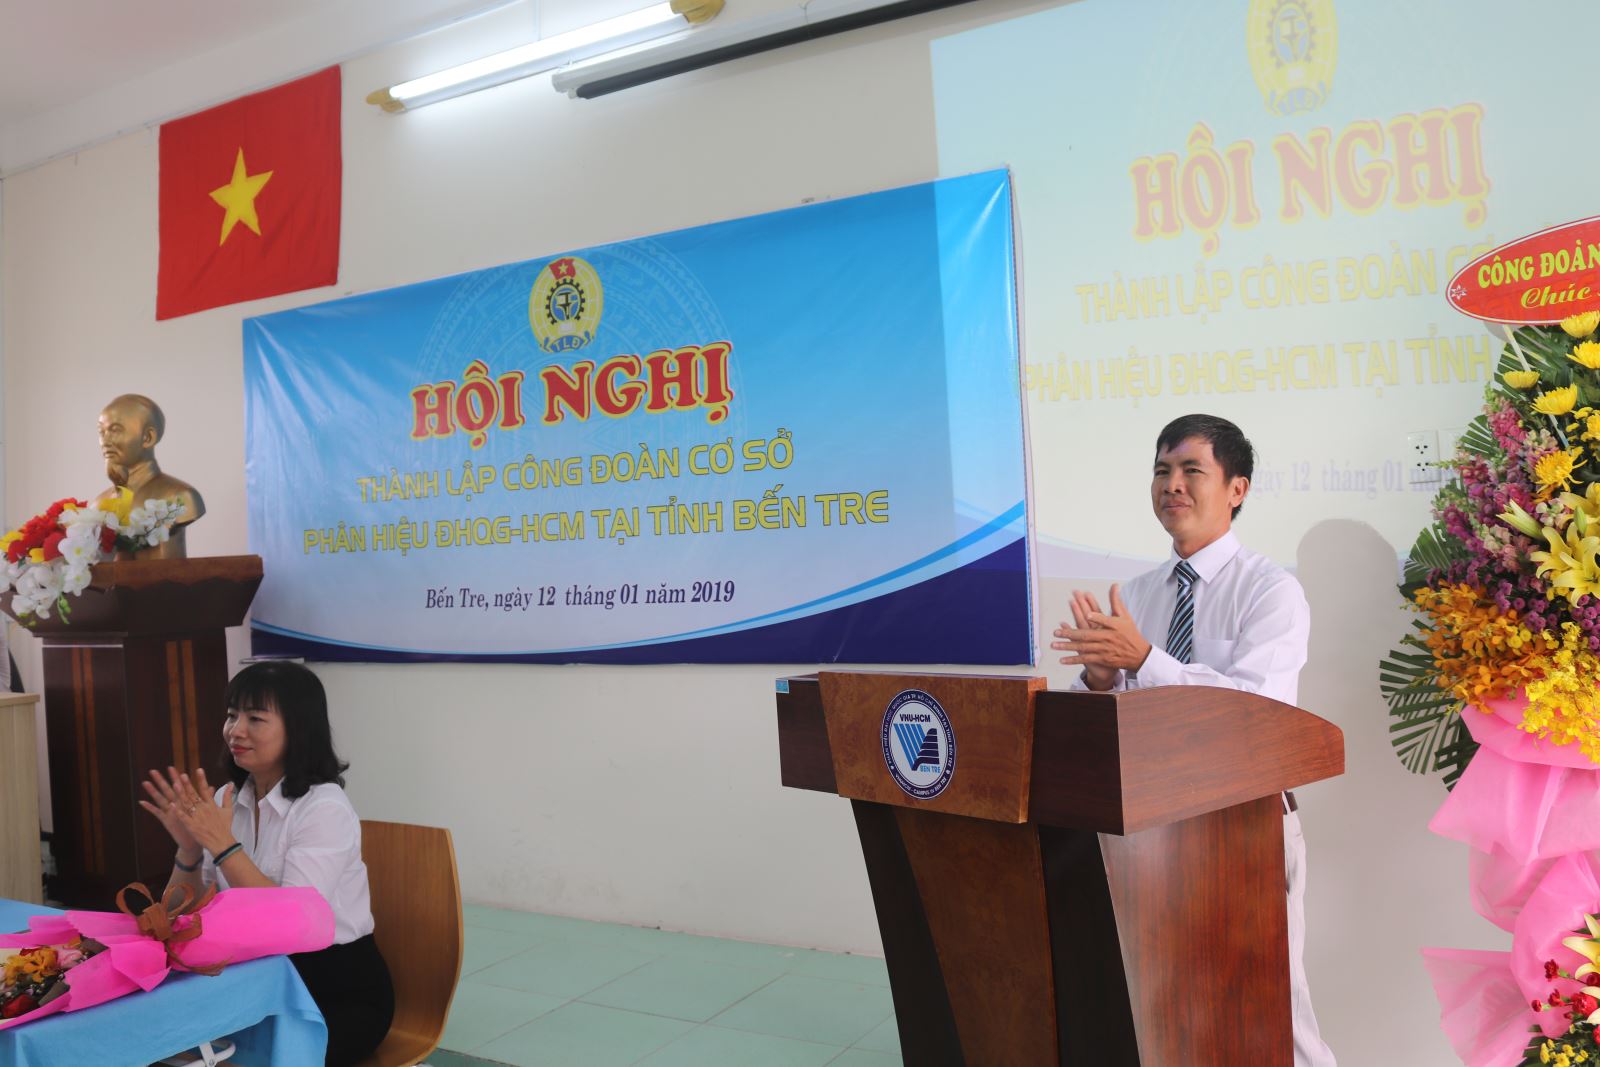 Hội nghị Thành lập Công đoàn cơ sở Phân hiệu ĐHQG-HCM tại tỉnh Bến Tre